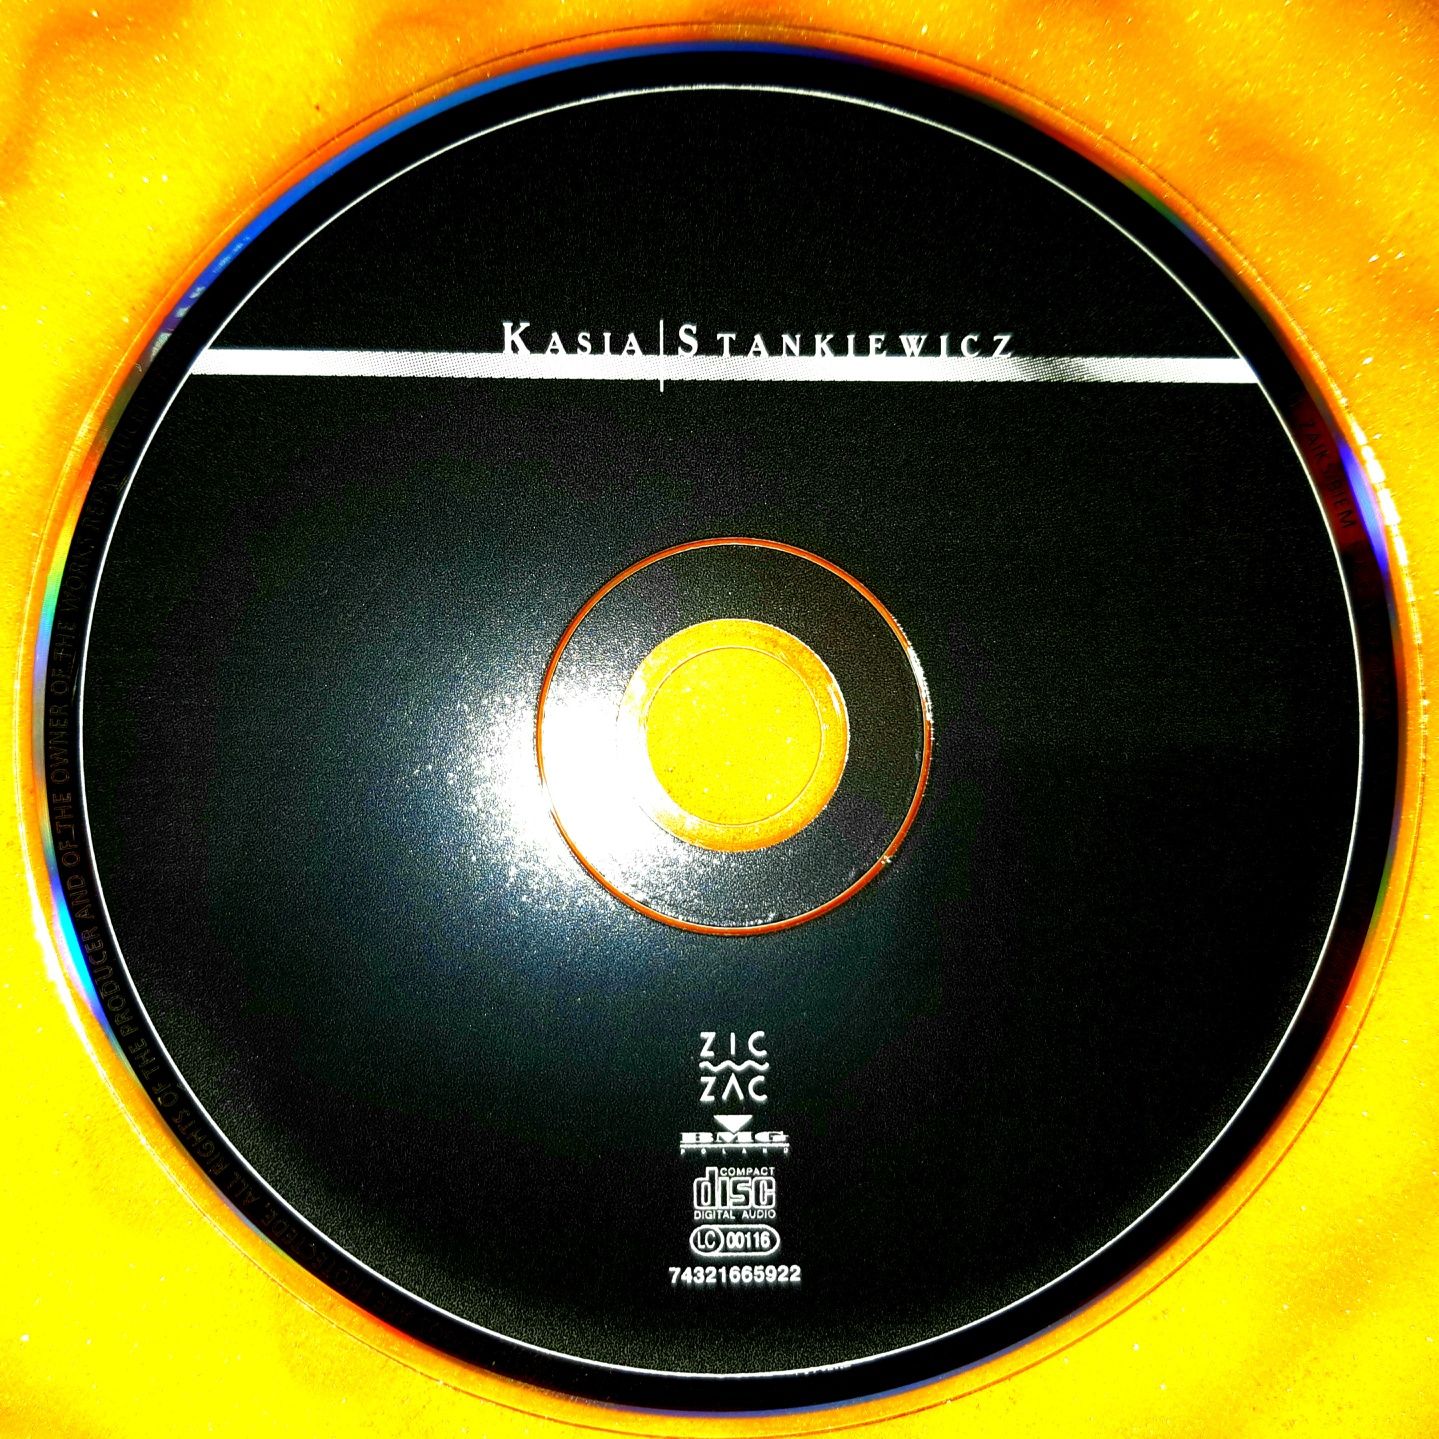 Kasia Stankiewicz – Kasia Stankiewicz (CD, 1999)